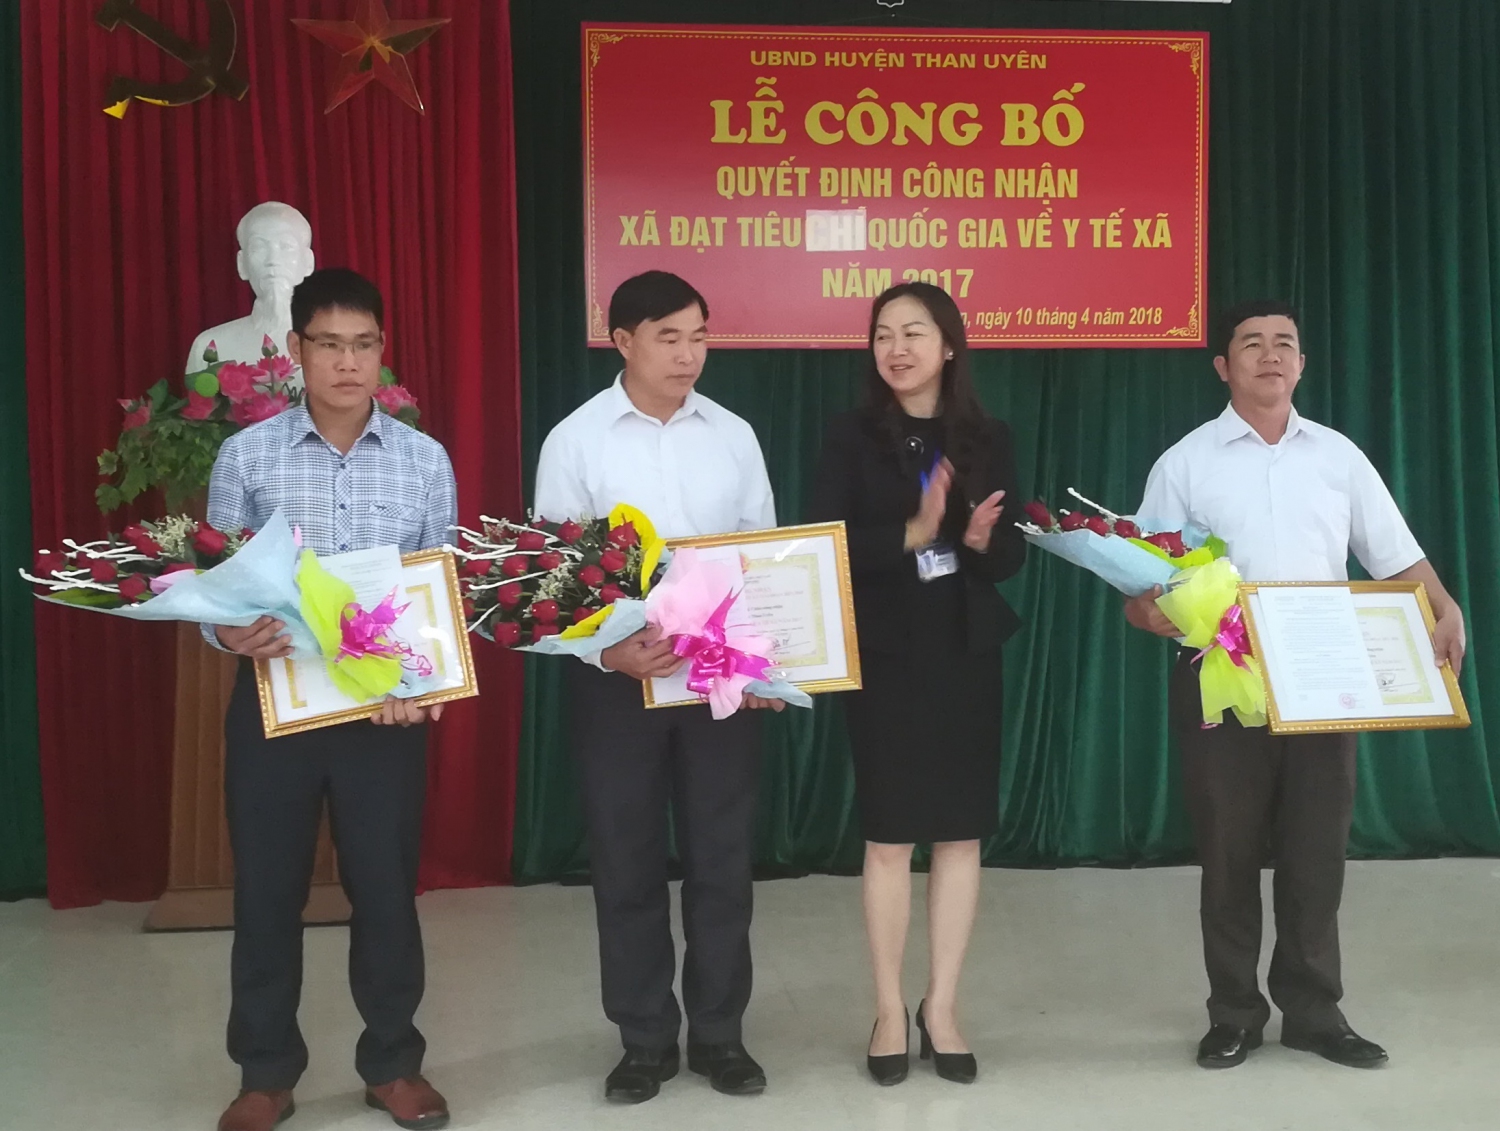   Lãnh đạo Sở Y tế tỉnh Lai Châu trao quyết định công nhận cho các xã